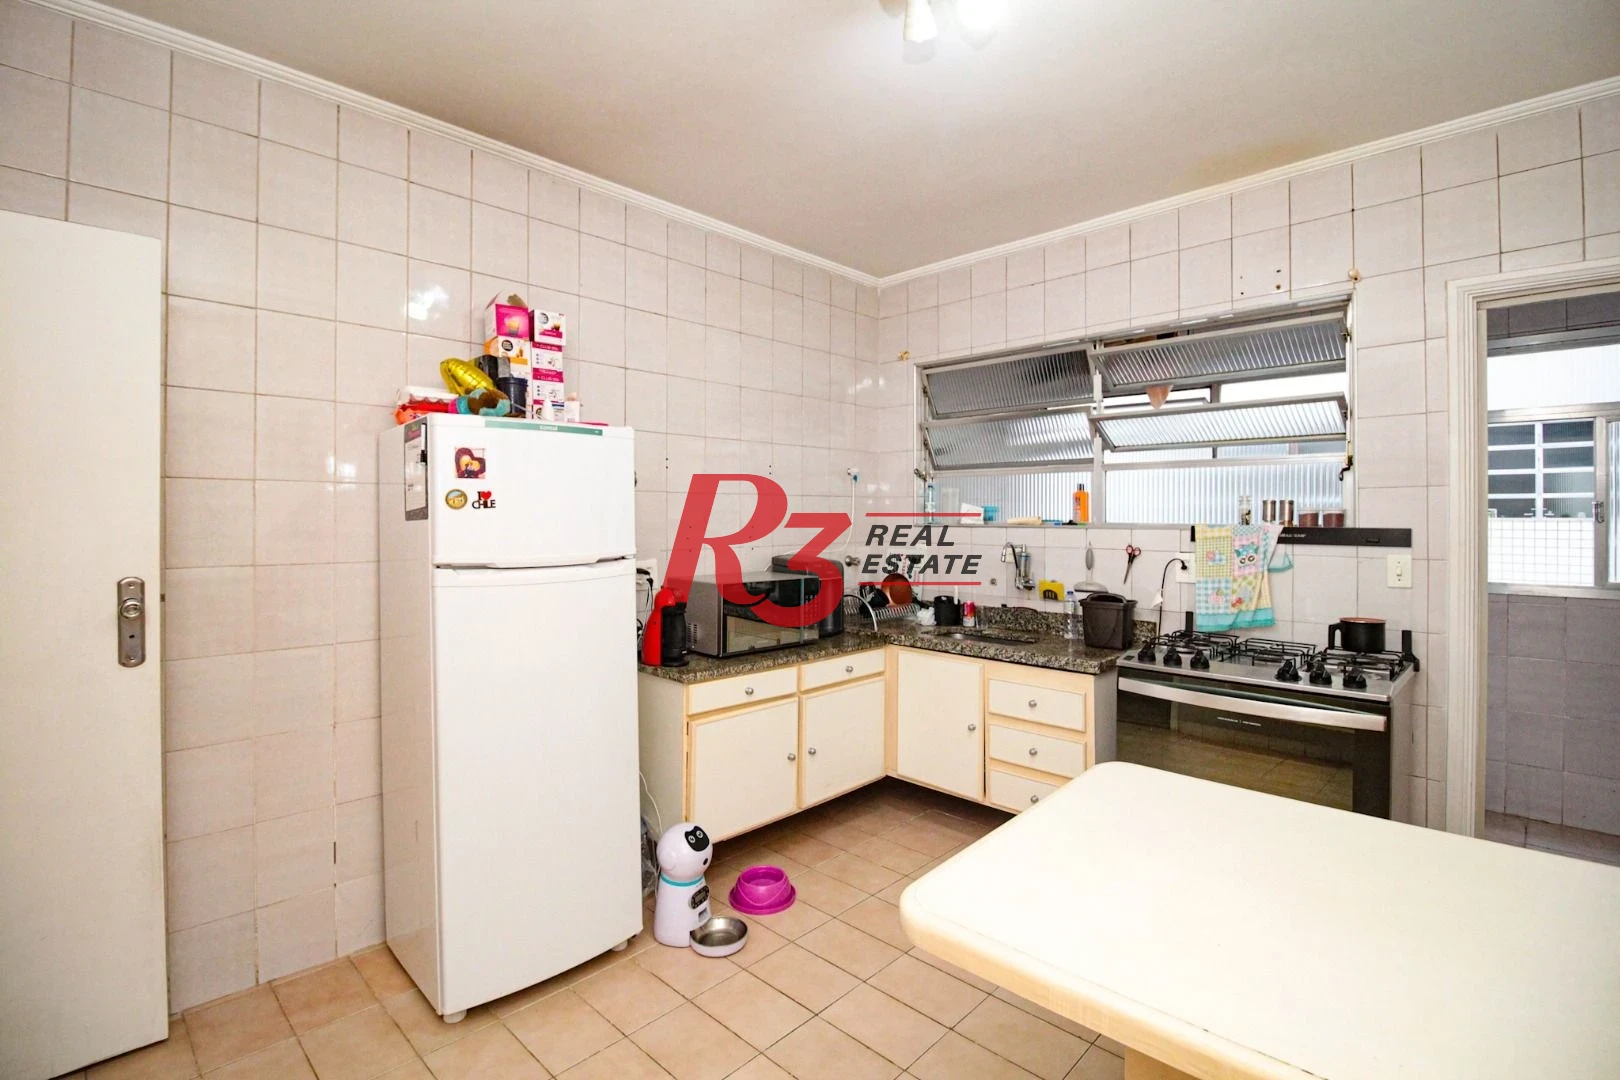 Apartamento à venda, 90 m² por R$ 465.000,00 - Aparecida - Santos/SP